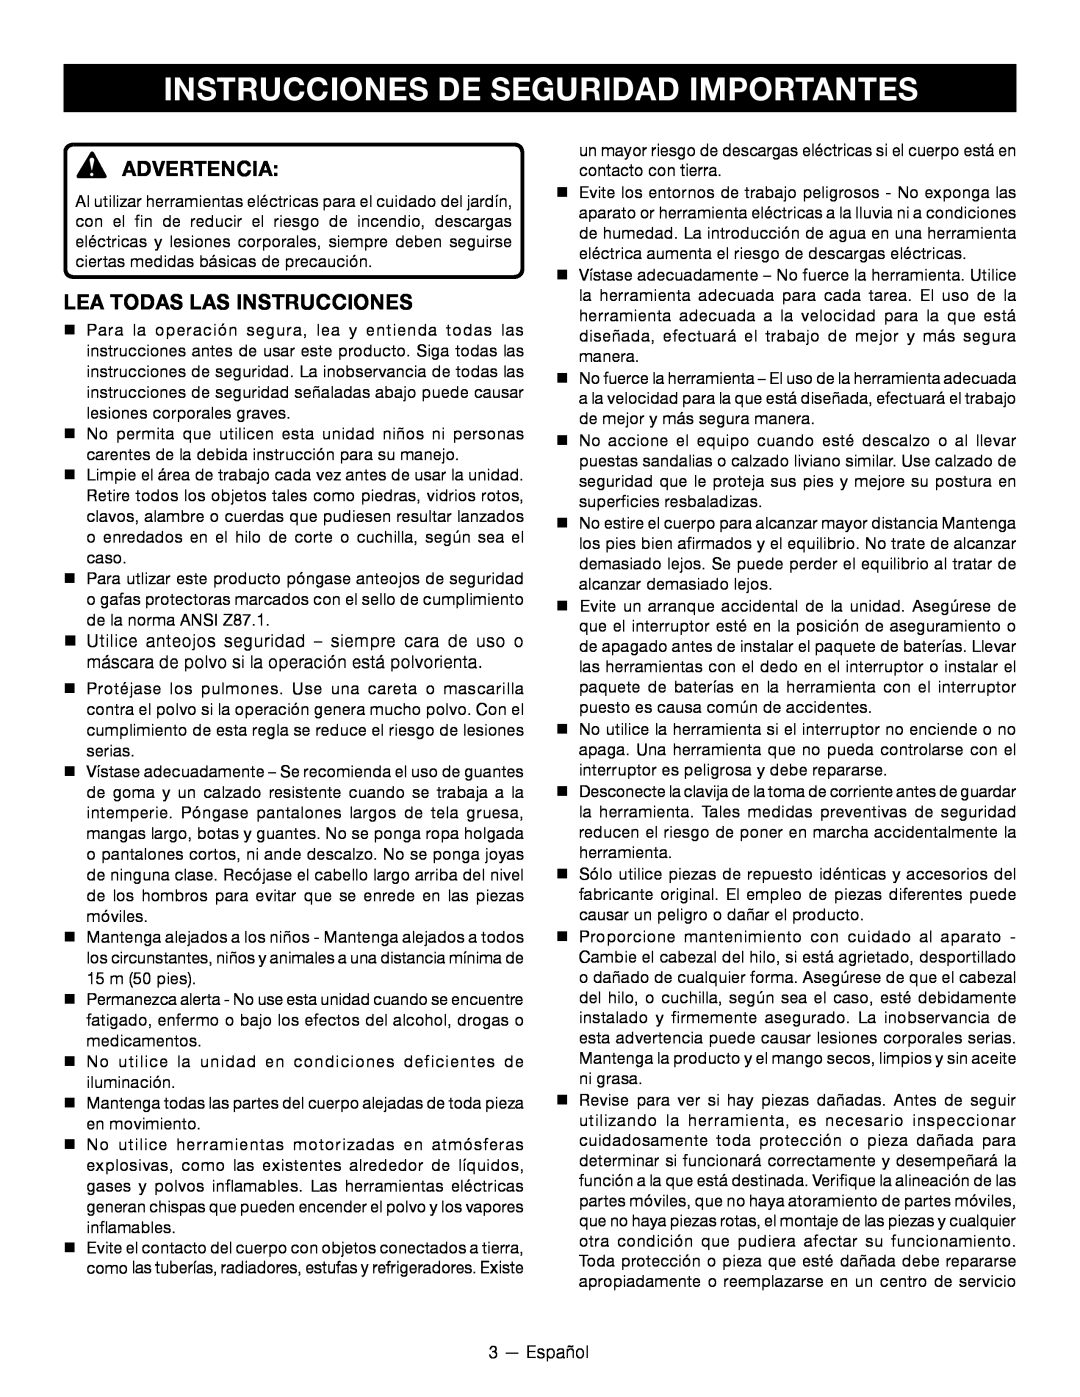 Ryobi RY24200 manuel dutilisation Instrucciones De Seguridad Importantes, Advertencia, Lea todas las instrucciones 